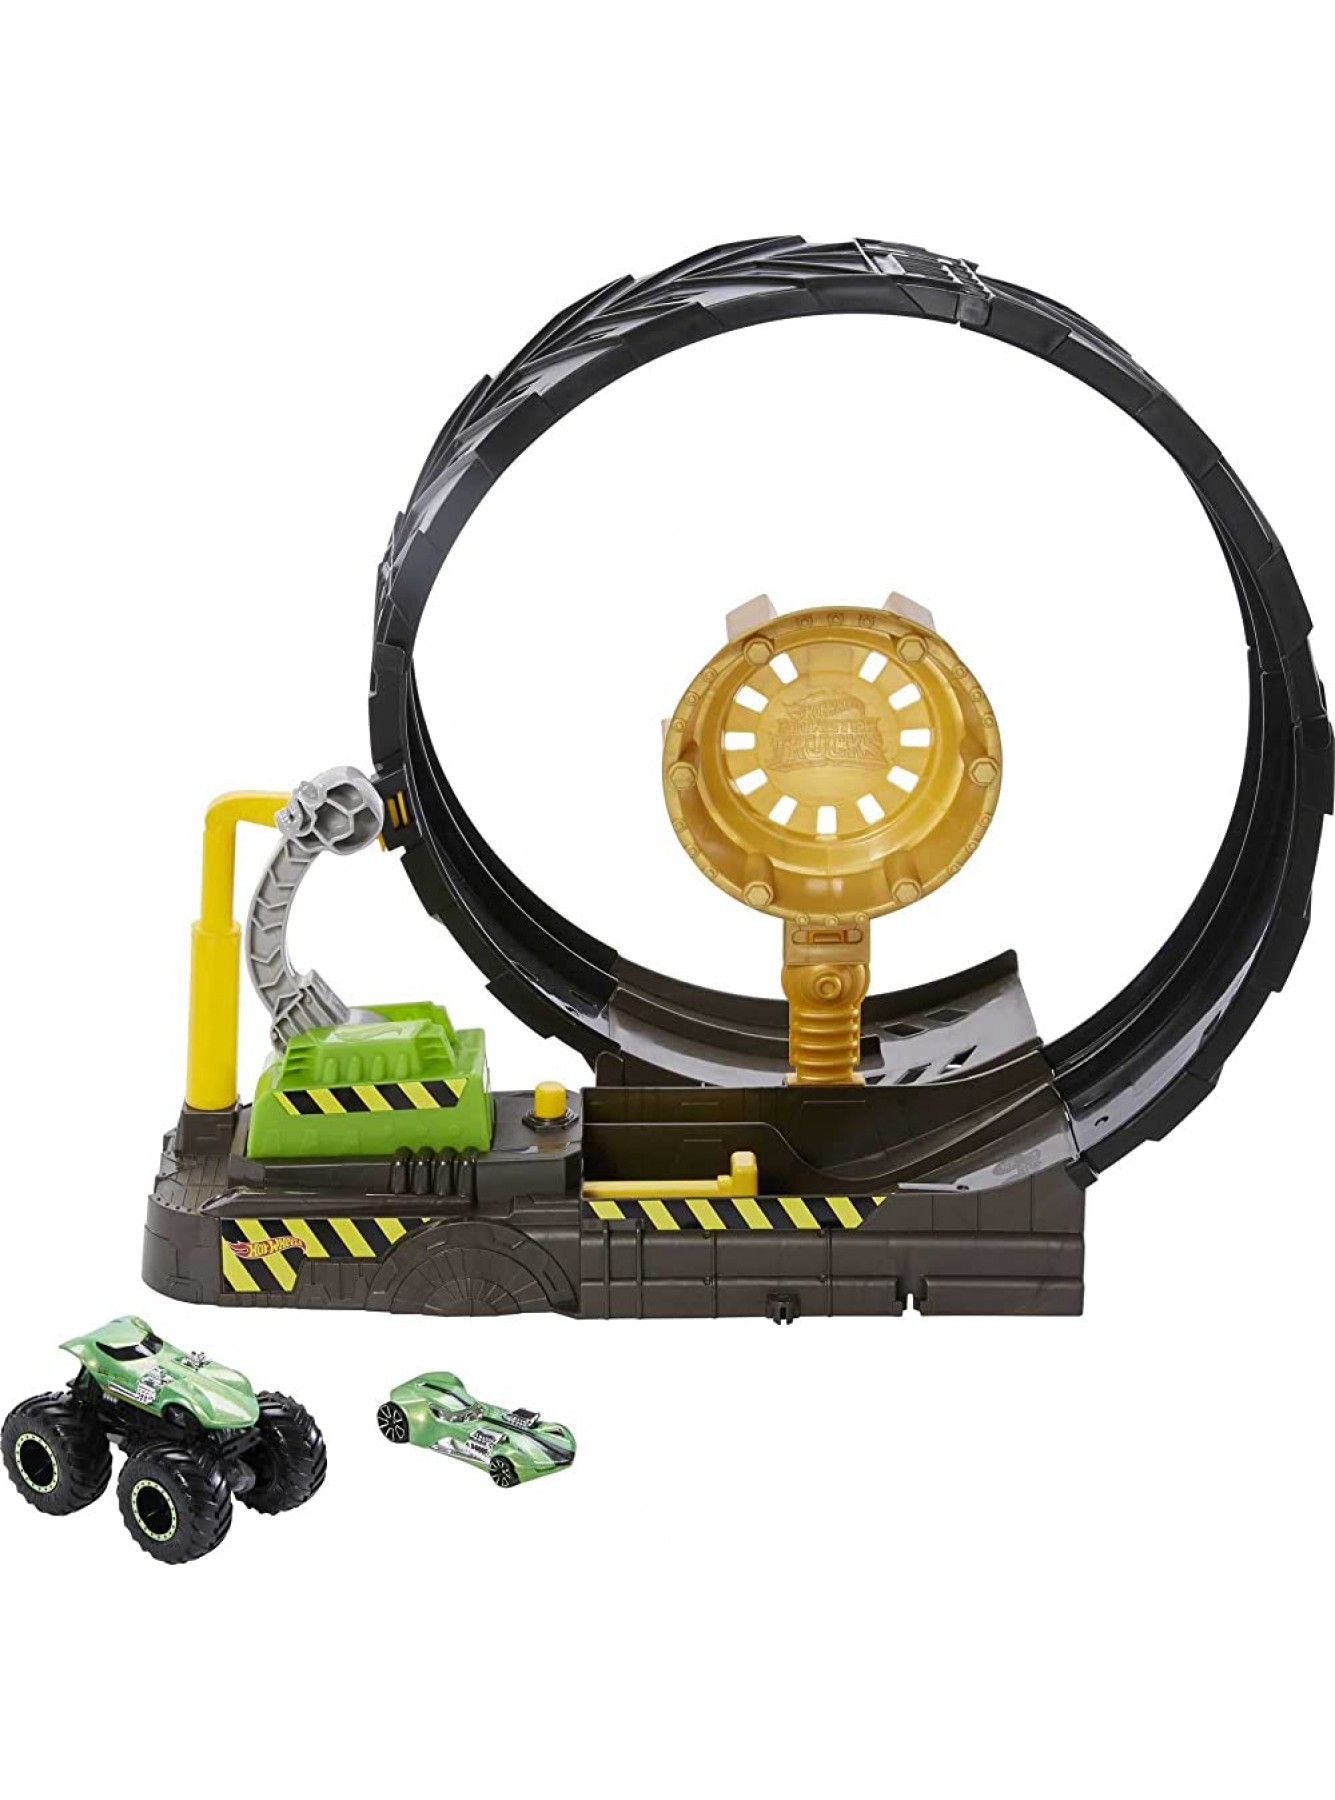 Hot Wheels HBH70 Monster Trucks Looping-Challenge Spielset mit 1 Monster Truck und 1 Hot-Wheels-Fahrzeug im Maßstab 1:64 Spielzeug Autorennbahn für Kinder von 4 bis 8 Jahre - B08J8JC5BS